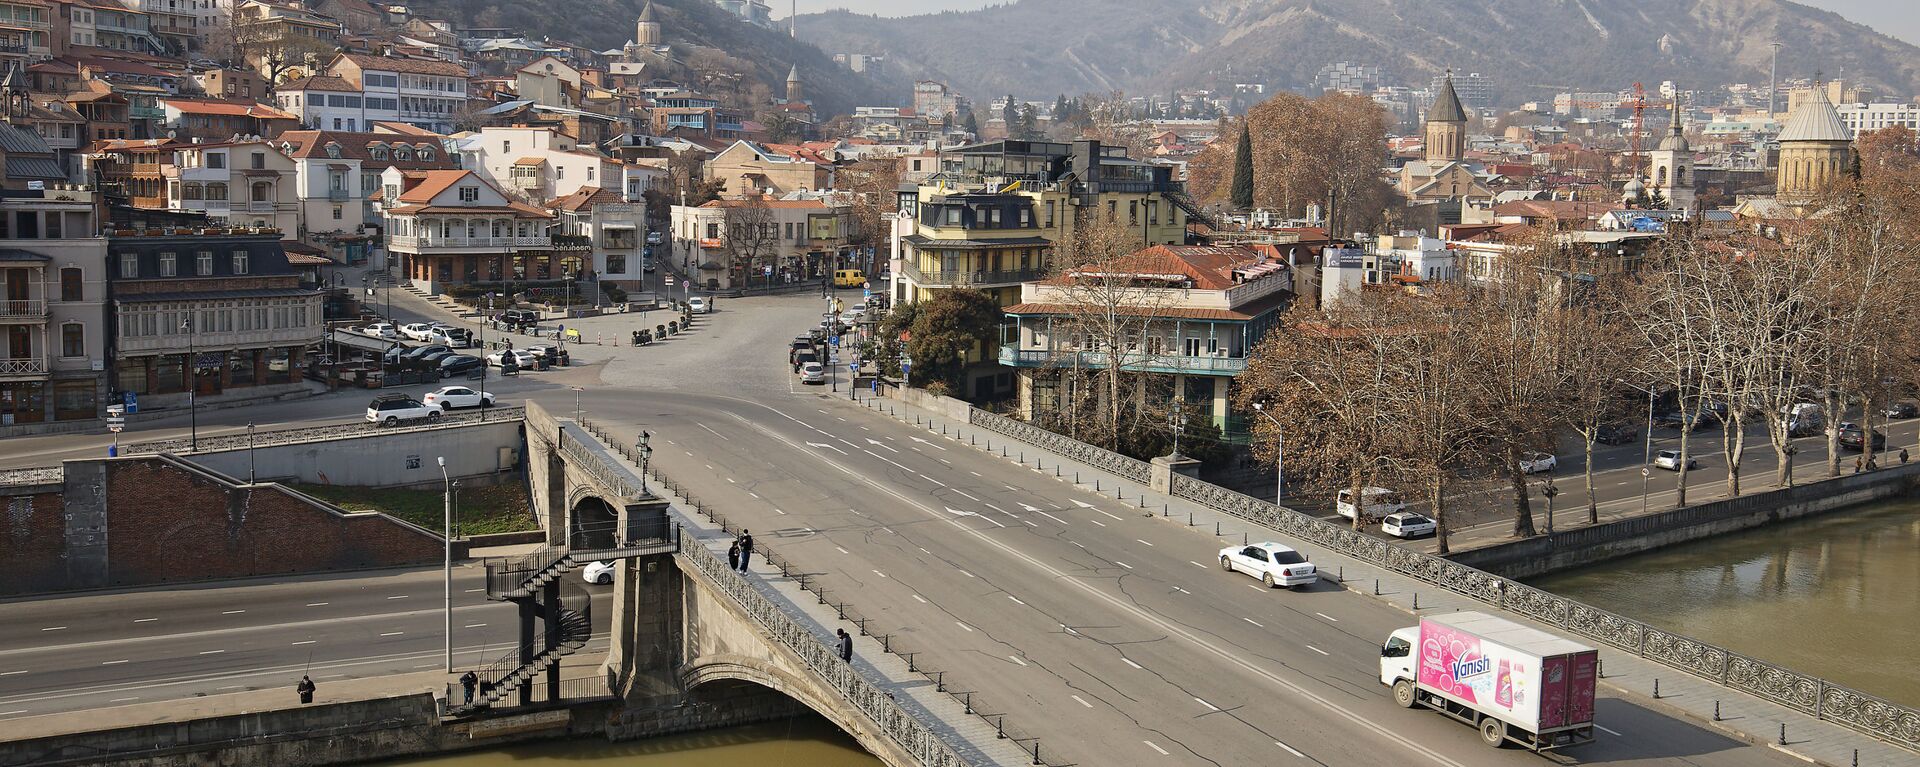 Вид на город Тбилиси - набережная и центр столицы, Метехский мост - Sputnik Грузия, 1920, 08.02.2021